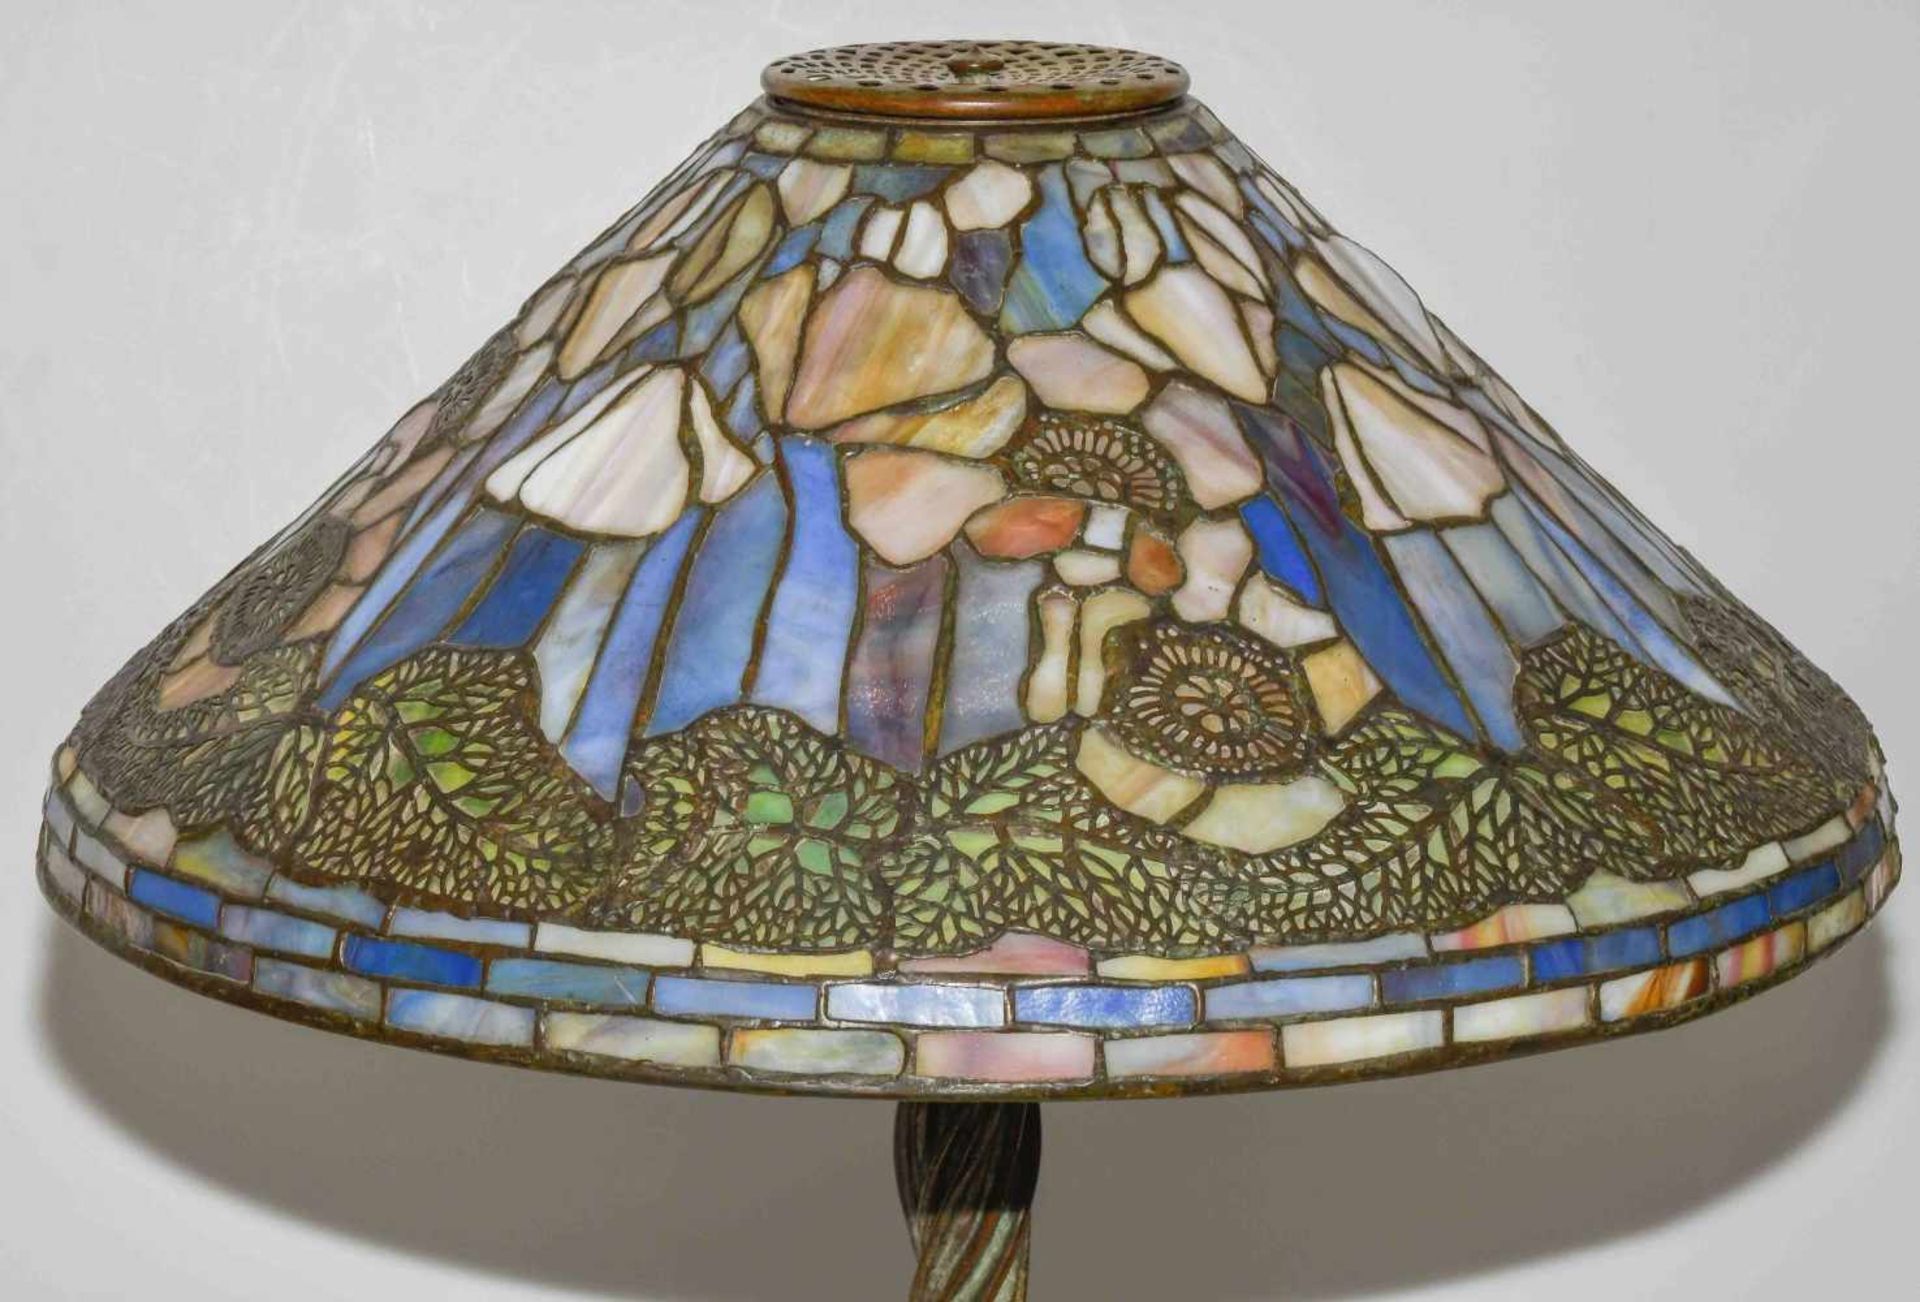 Tiffany Studios New YorkTischlampe "Poppy". Schirm aus "leaded Glass", weisser Mohn mit Blättern, - Image 18 of 24